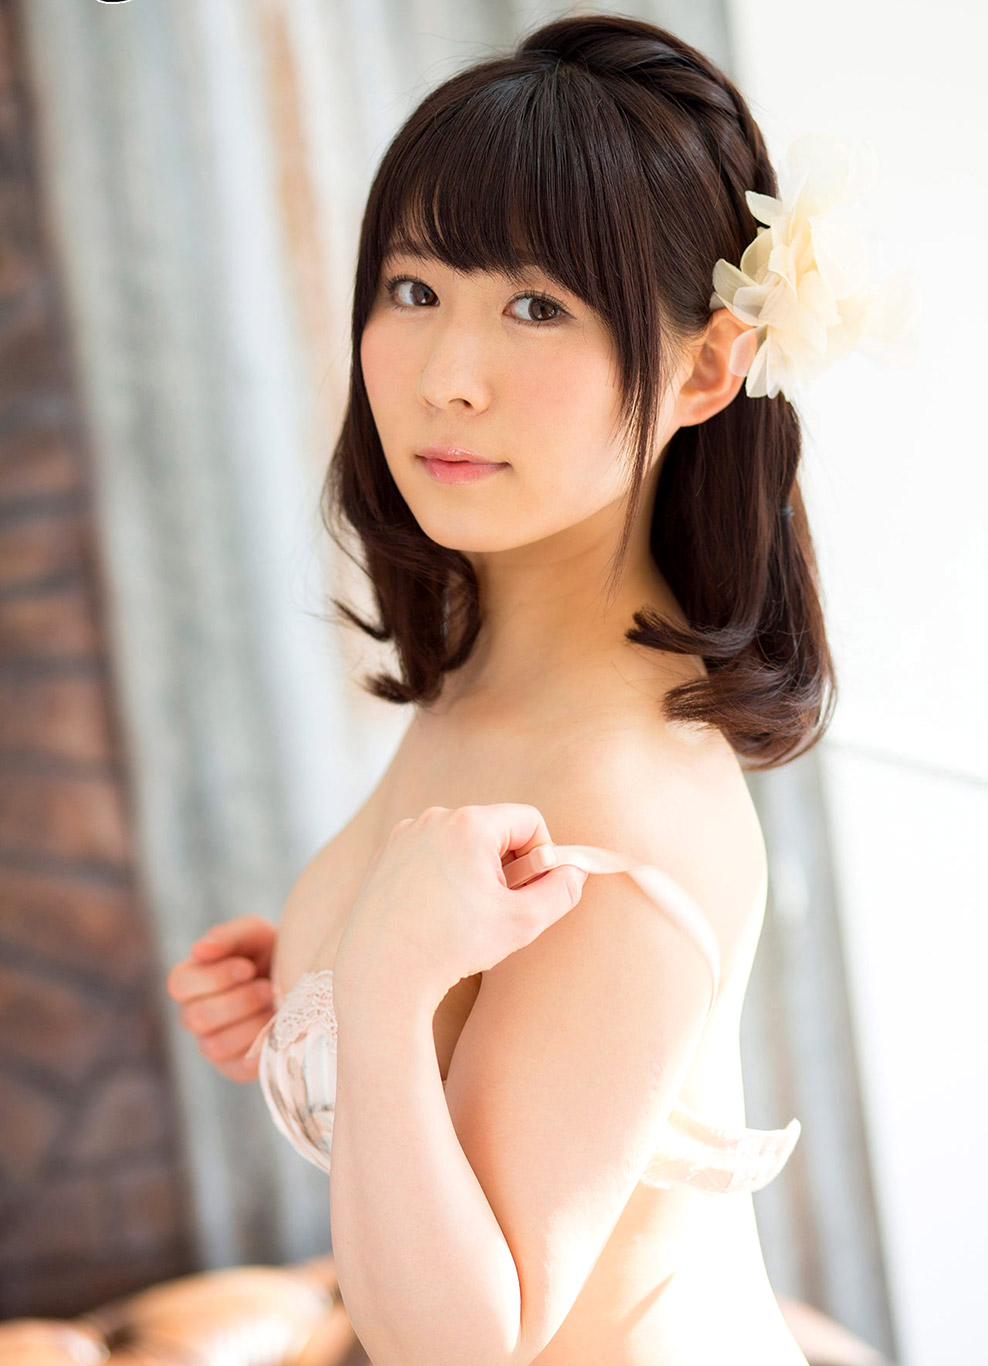 Japanese Model Rin - JavTube Japan AV Idol Rin Asuka é£›é³¥ã‚Šã‚“ xXx Pic 24!